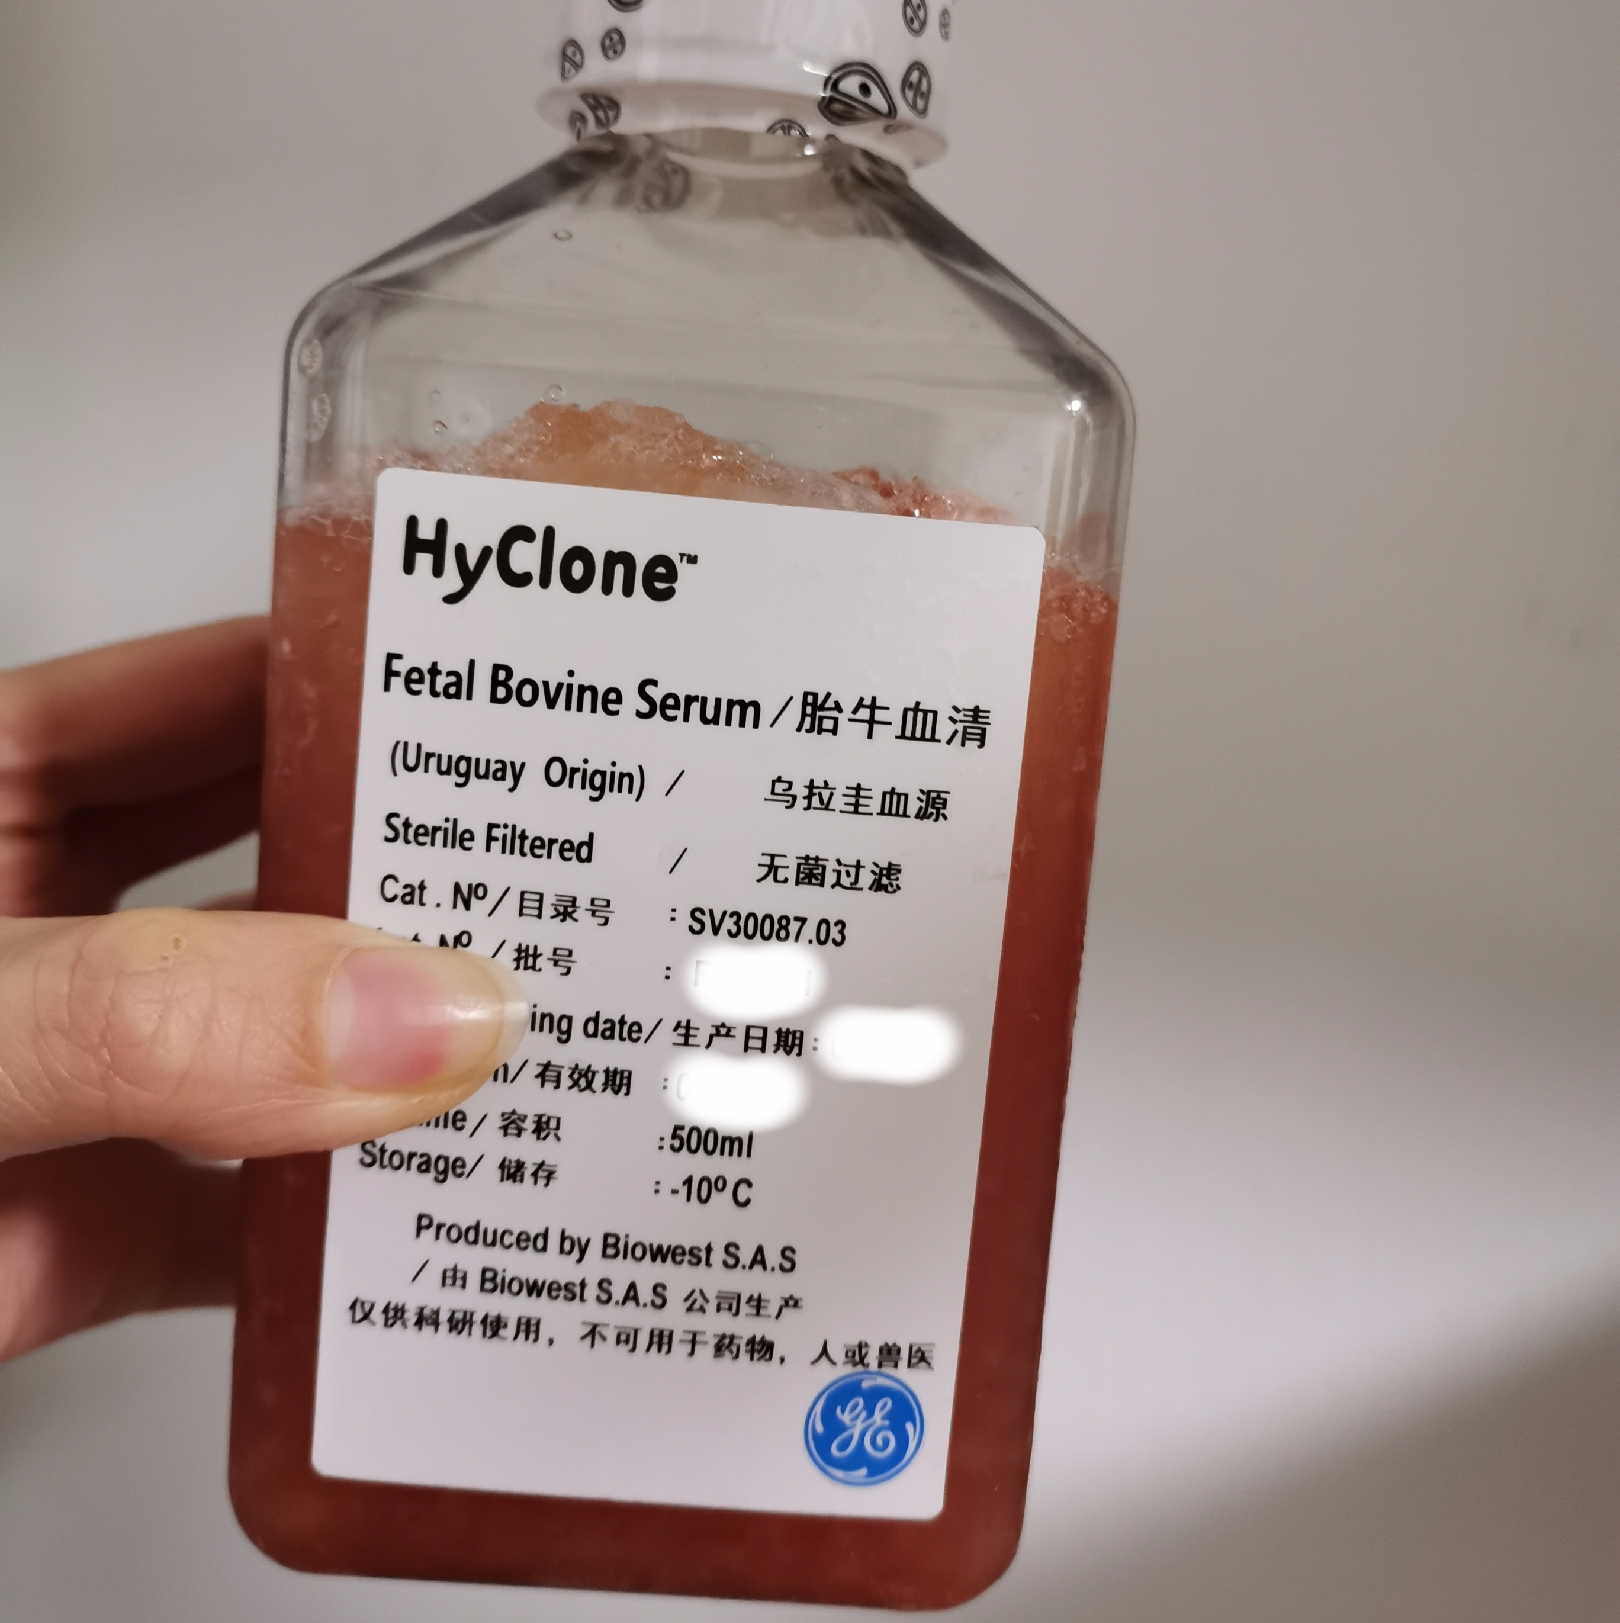 Hyclone低IgG胎牛血清SH30151.03美国源